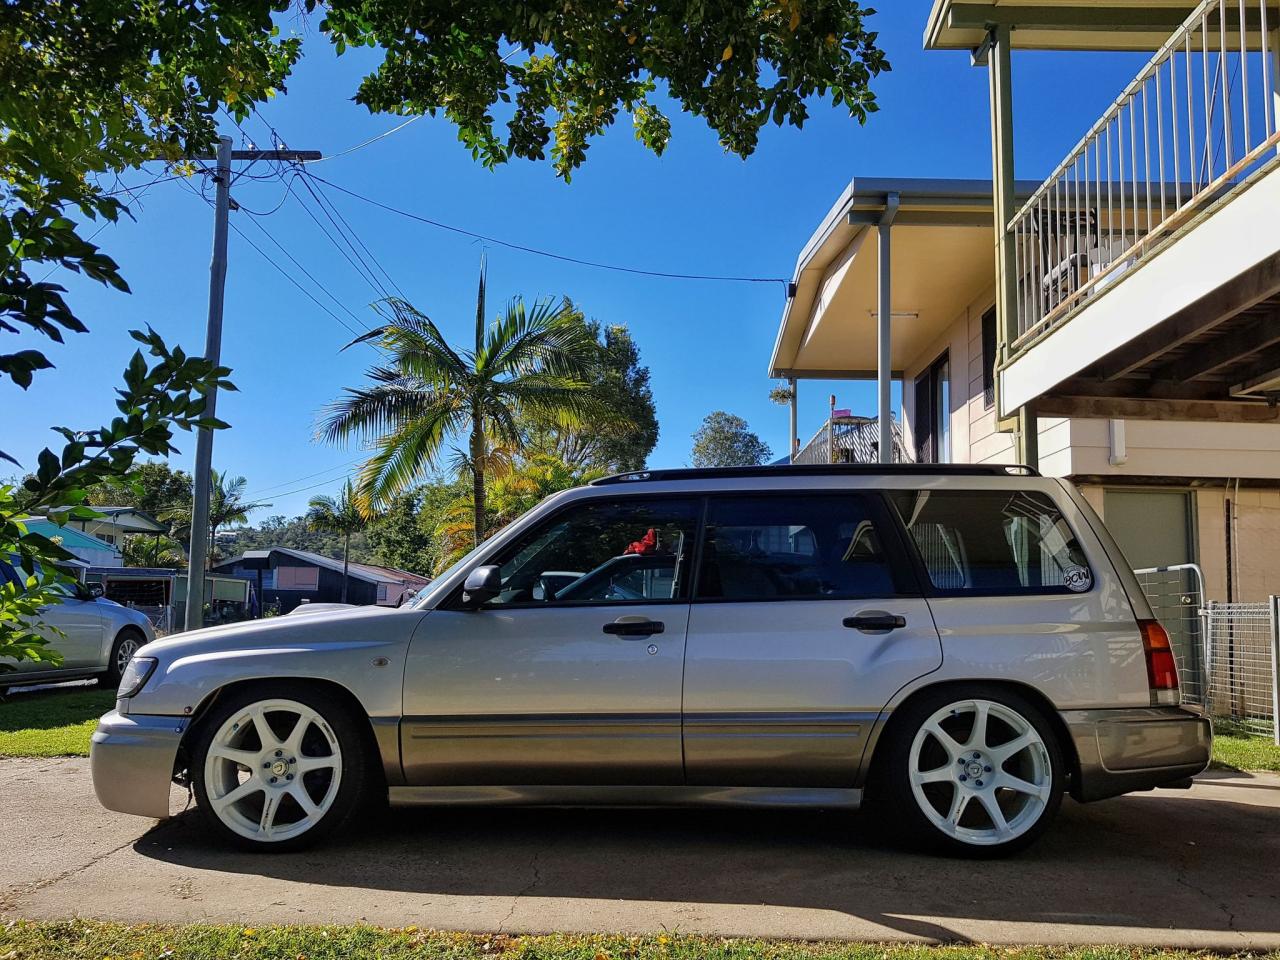 1999 Subaru